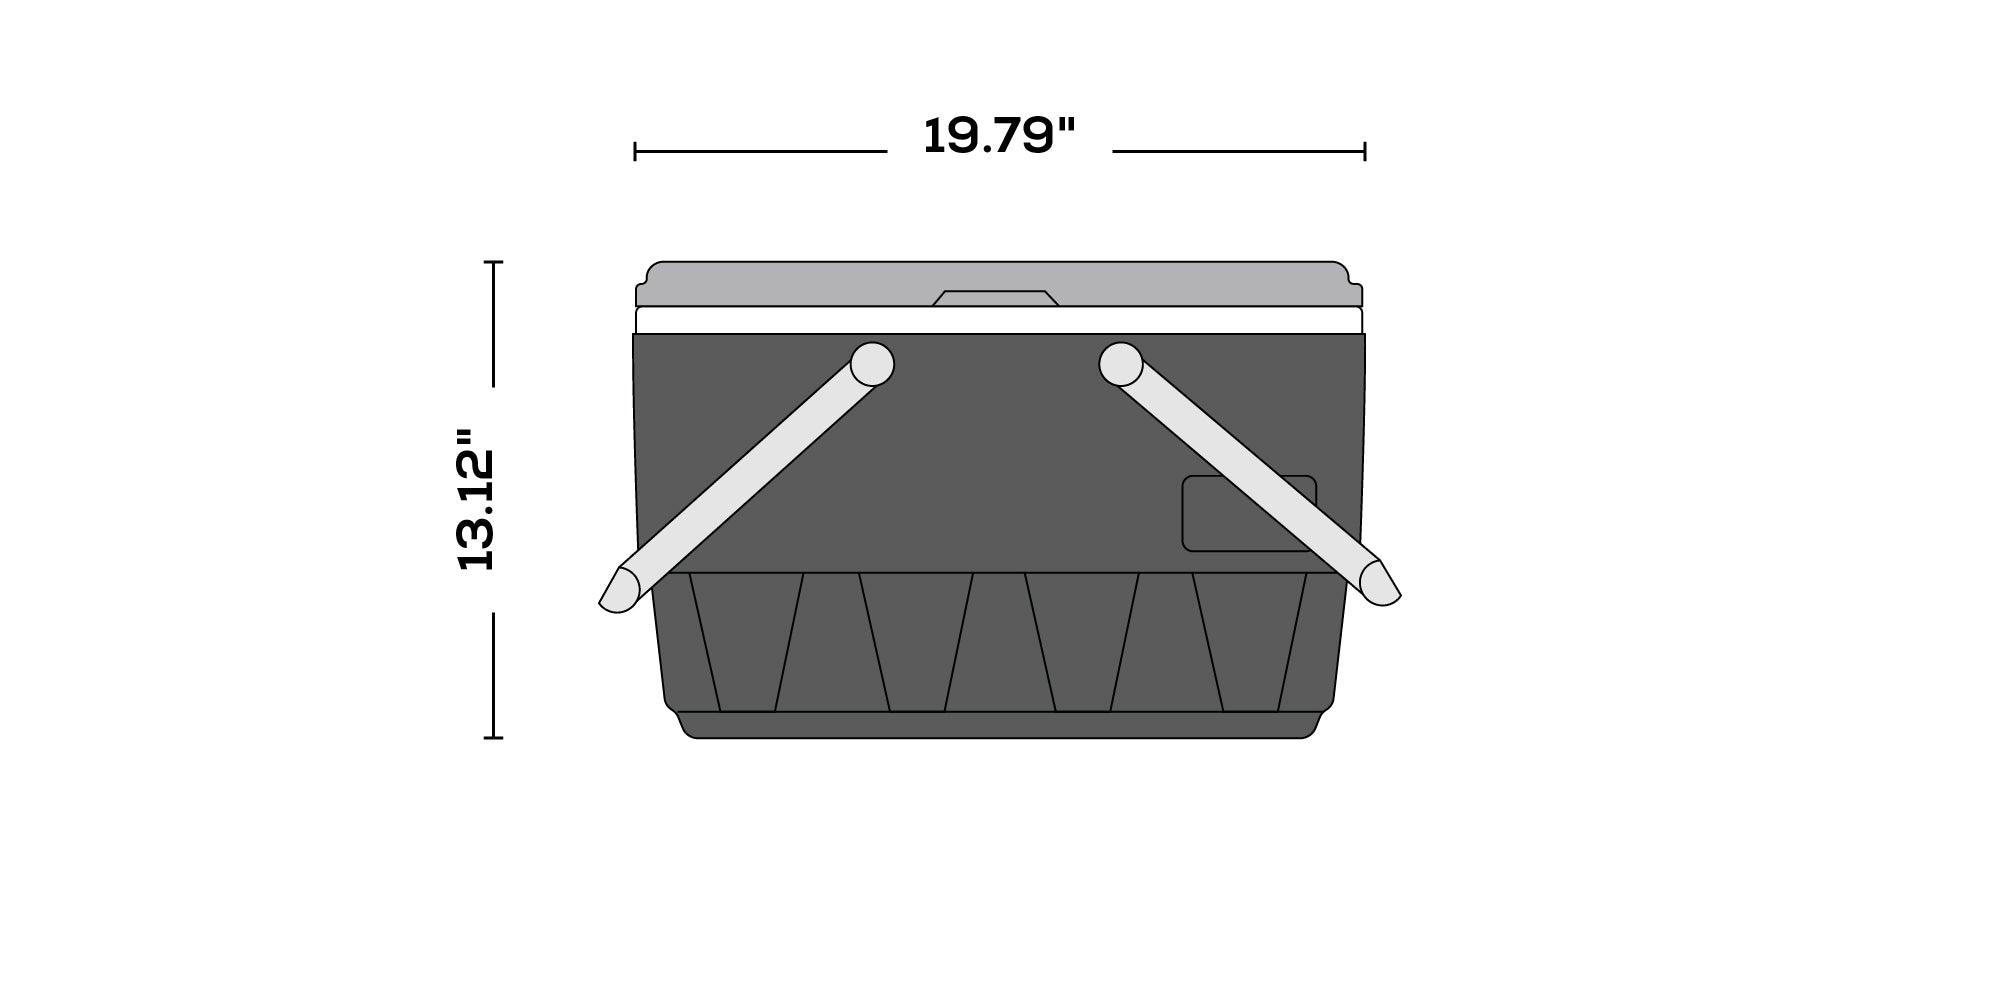 Retro Picnic Basket 25 Qt Cooler dimensions